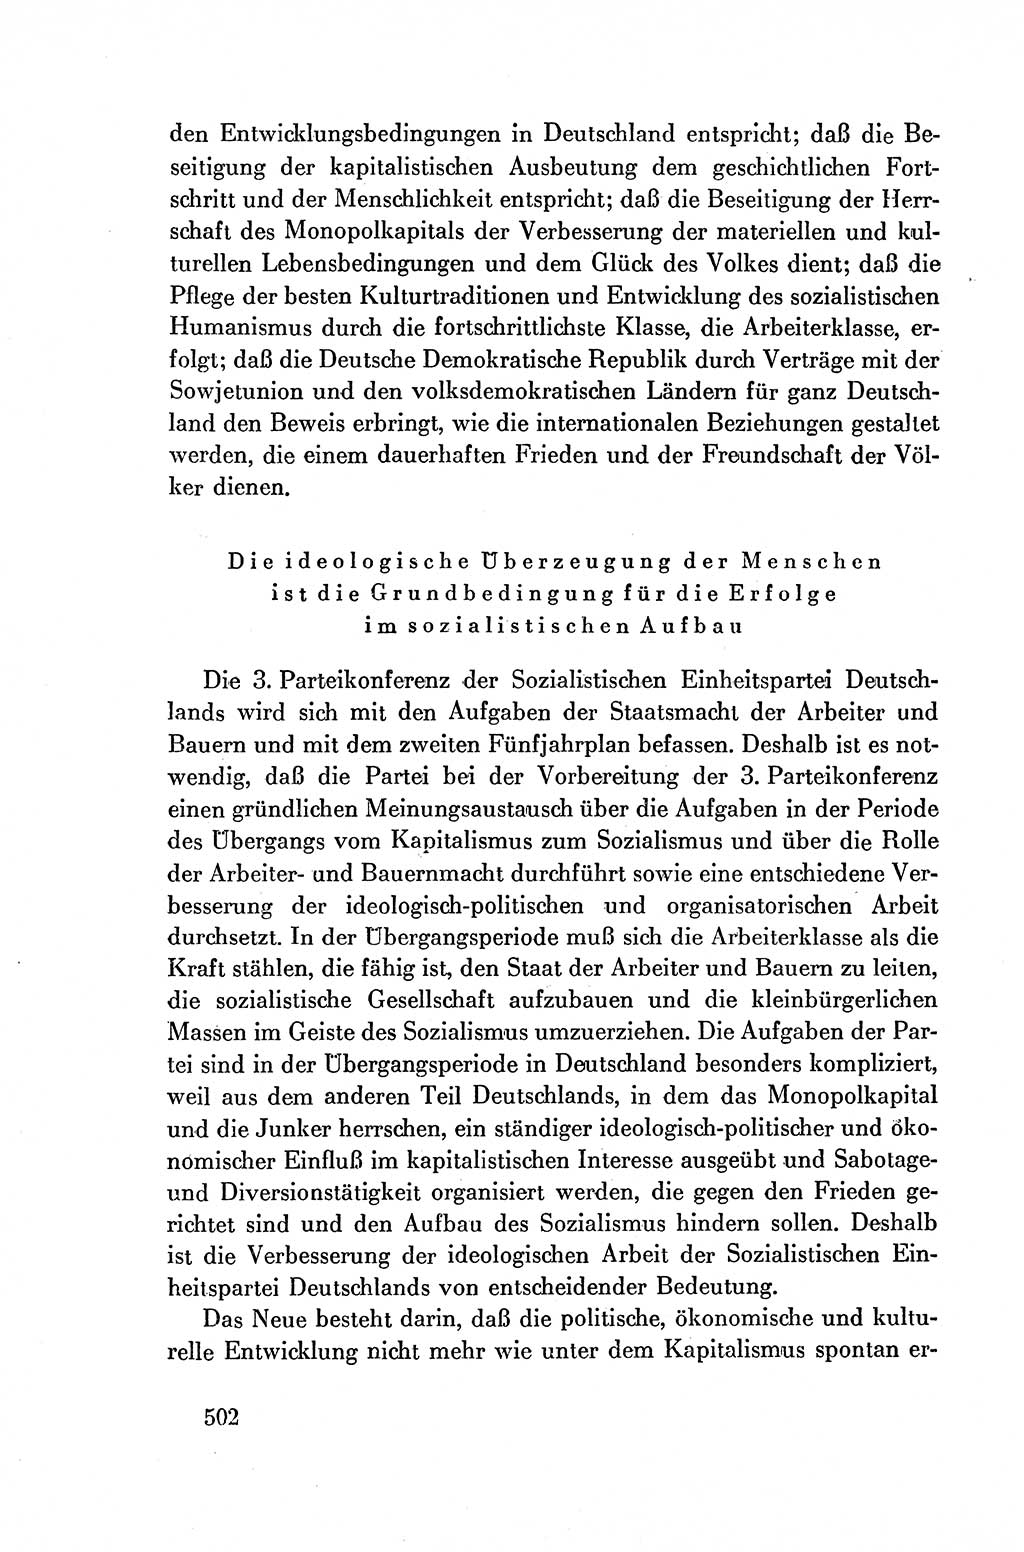 Dokumente der Sozialistischen Einheitspartei Deutschlands (SED) [Deutsche Demokratische Republik (DDR)] 1954-1955, Seite 502 (Dok. SED DDR 1954-1955, S. 502)